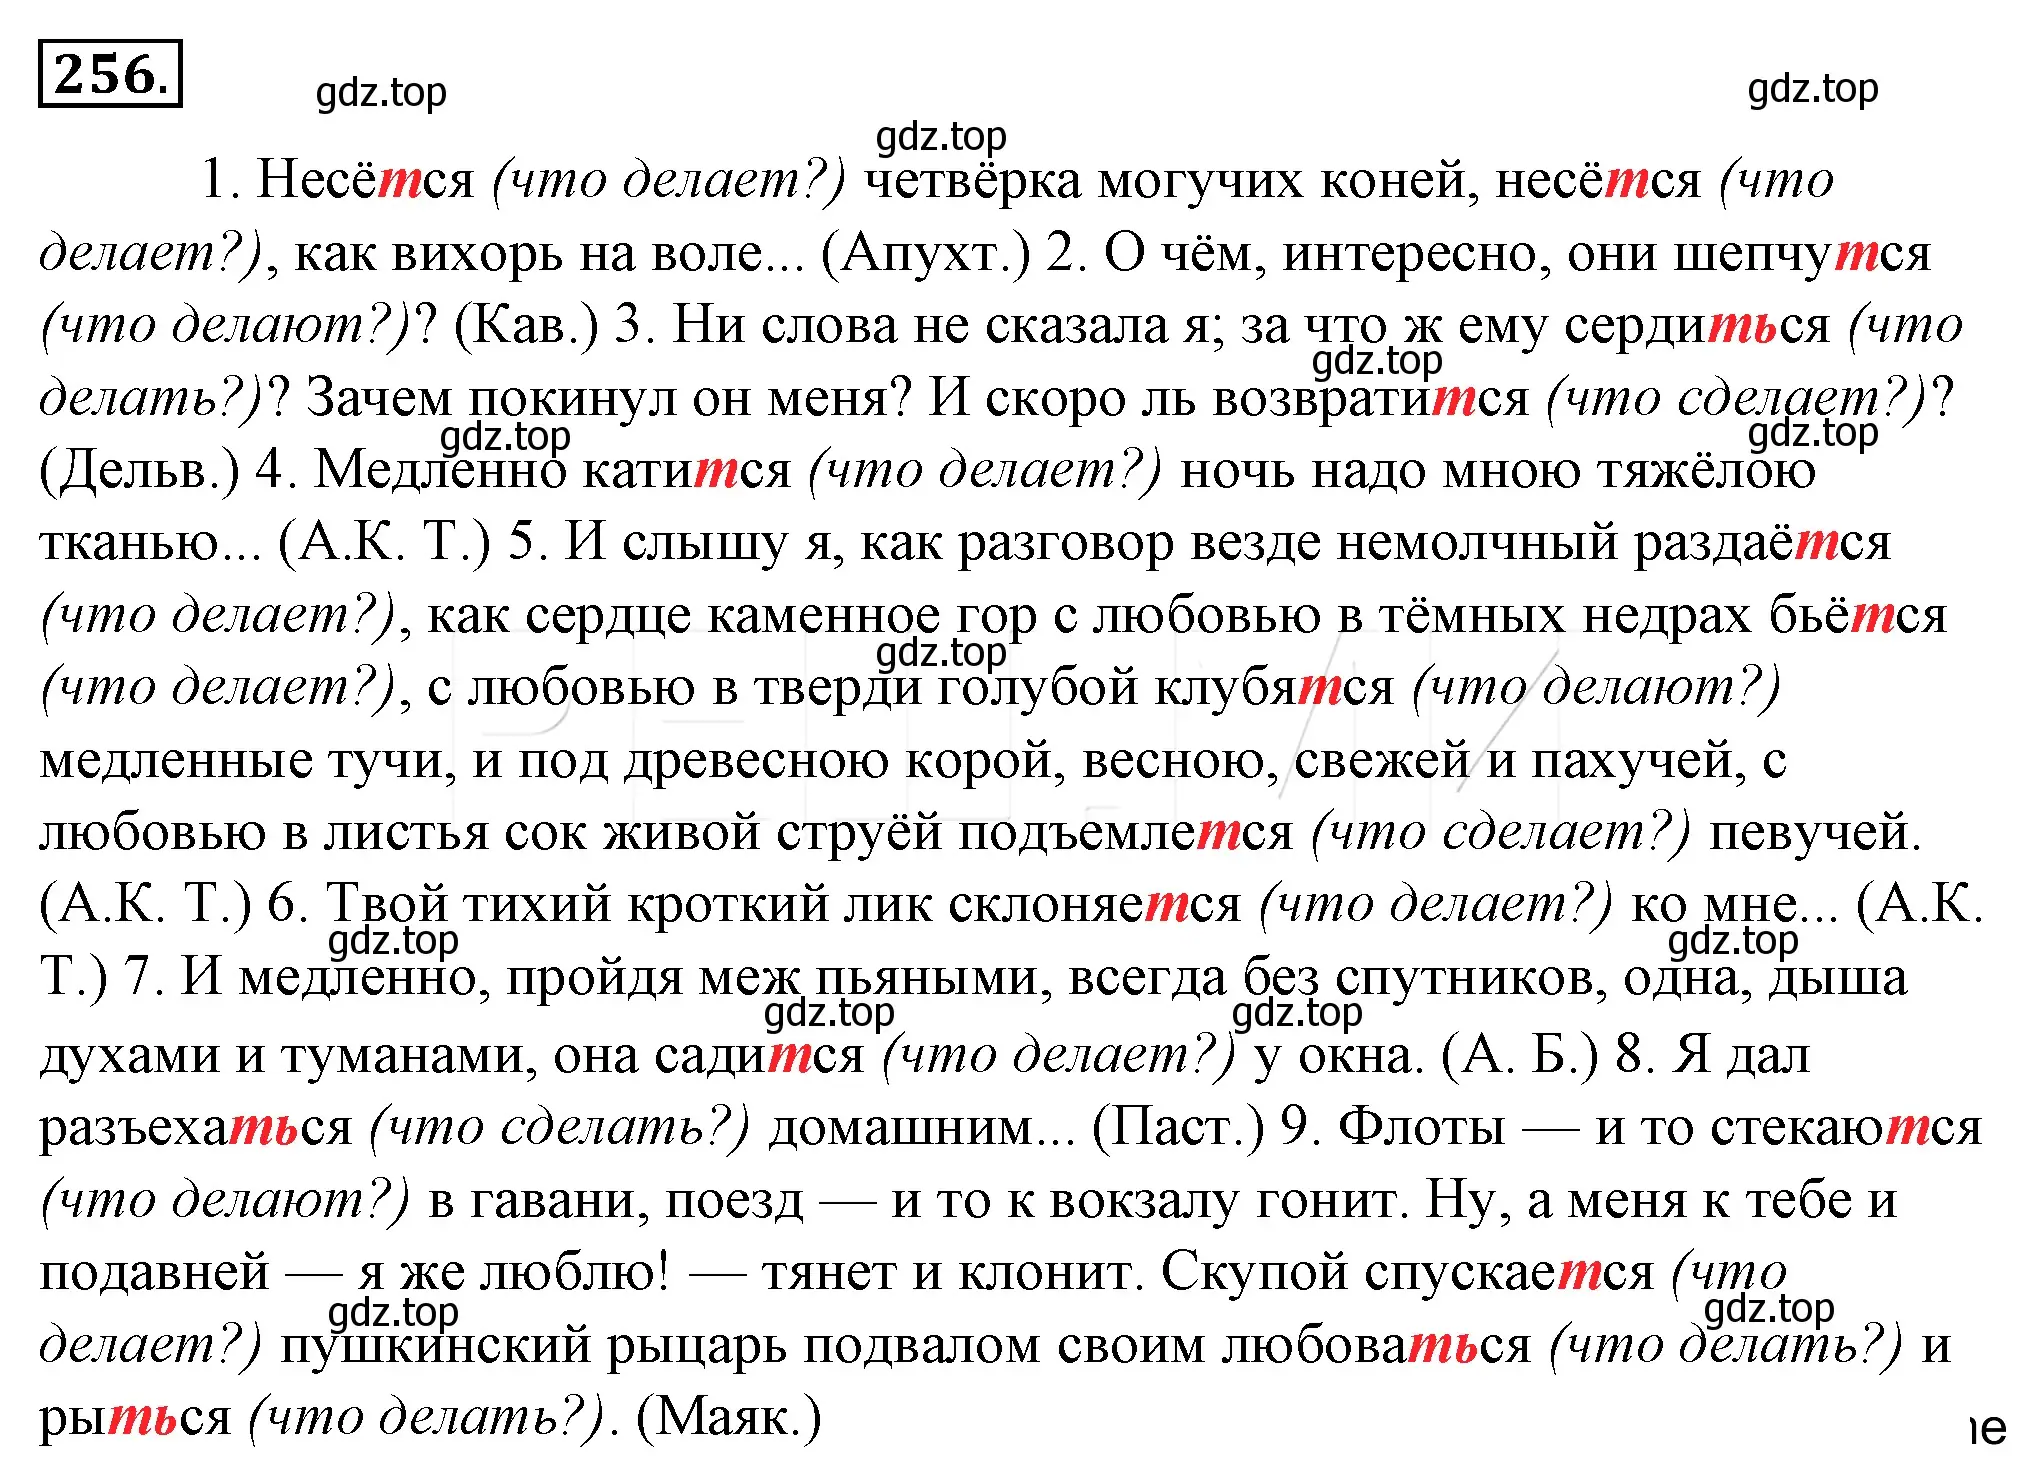 Решение 4. номер 280 (страница 259) гдз по русскому языку 10-11 класс Гольцова, Шамшин, учебник 1 часть